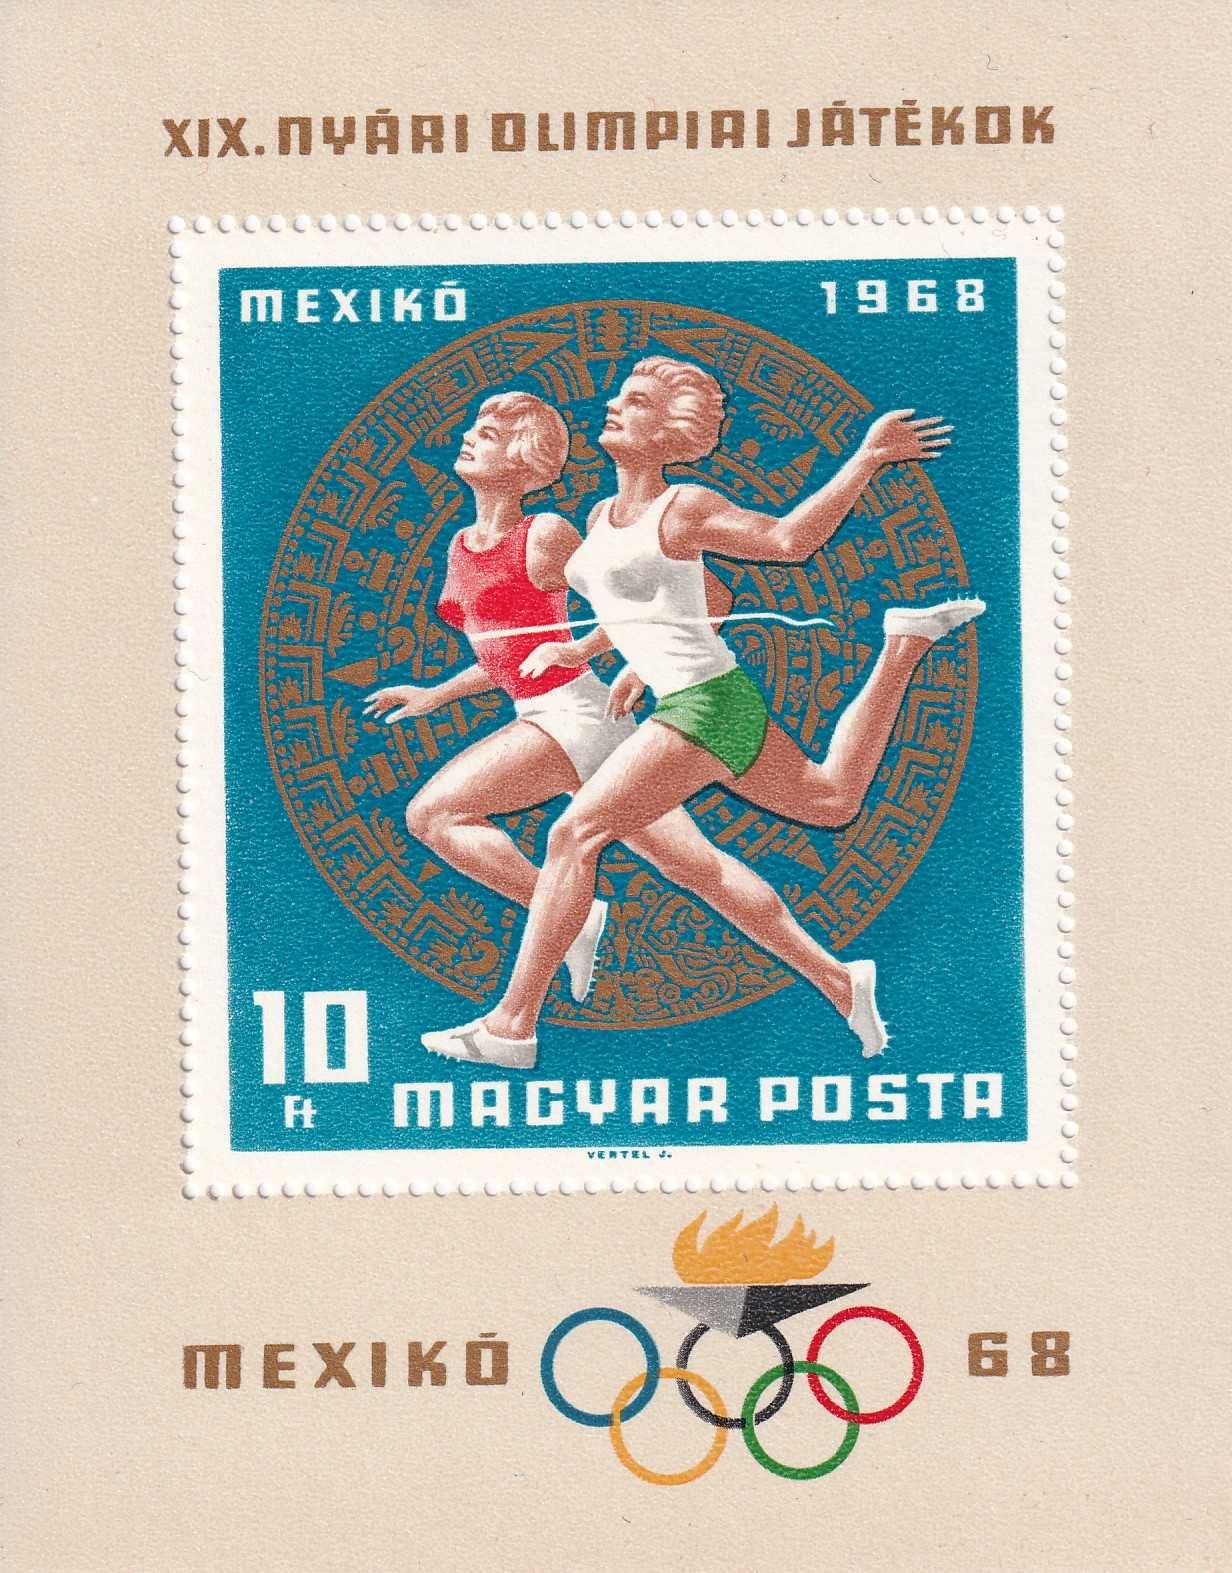 Węgry 1968 cena 3,90 zł kat.5€ - sport